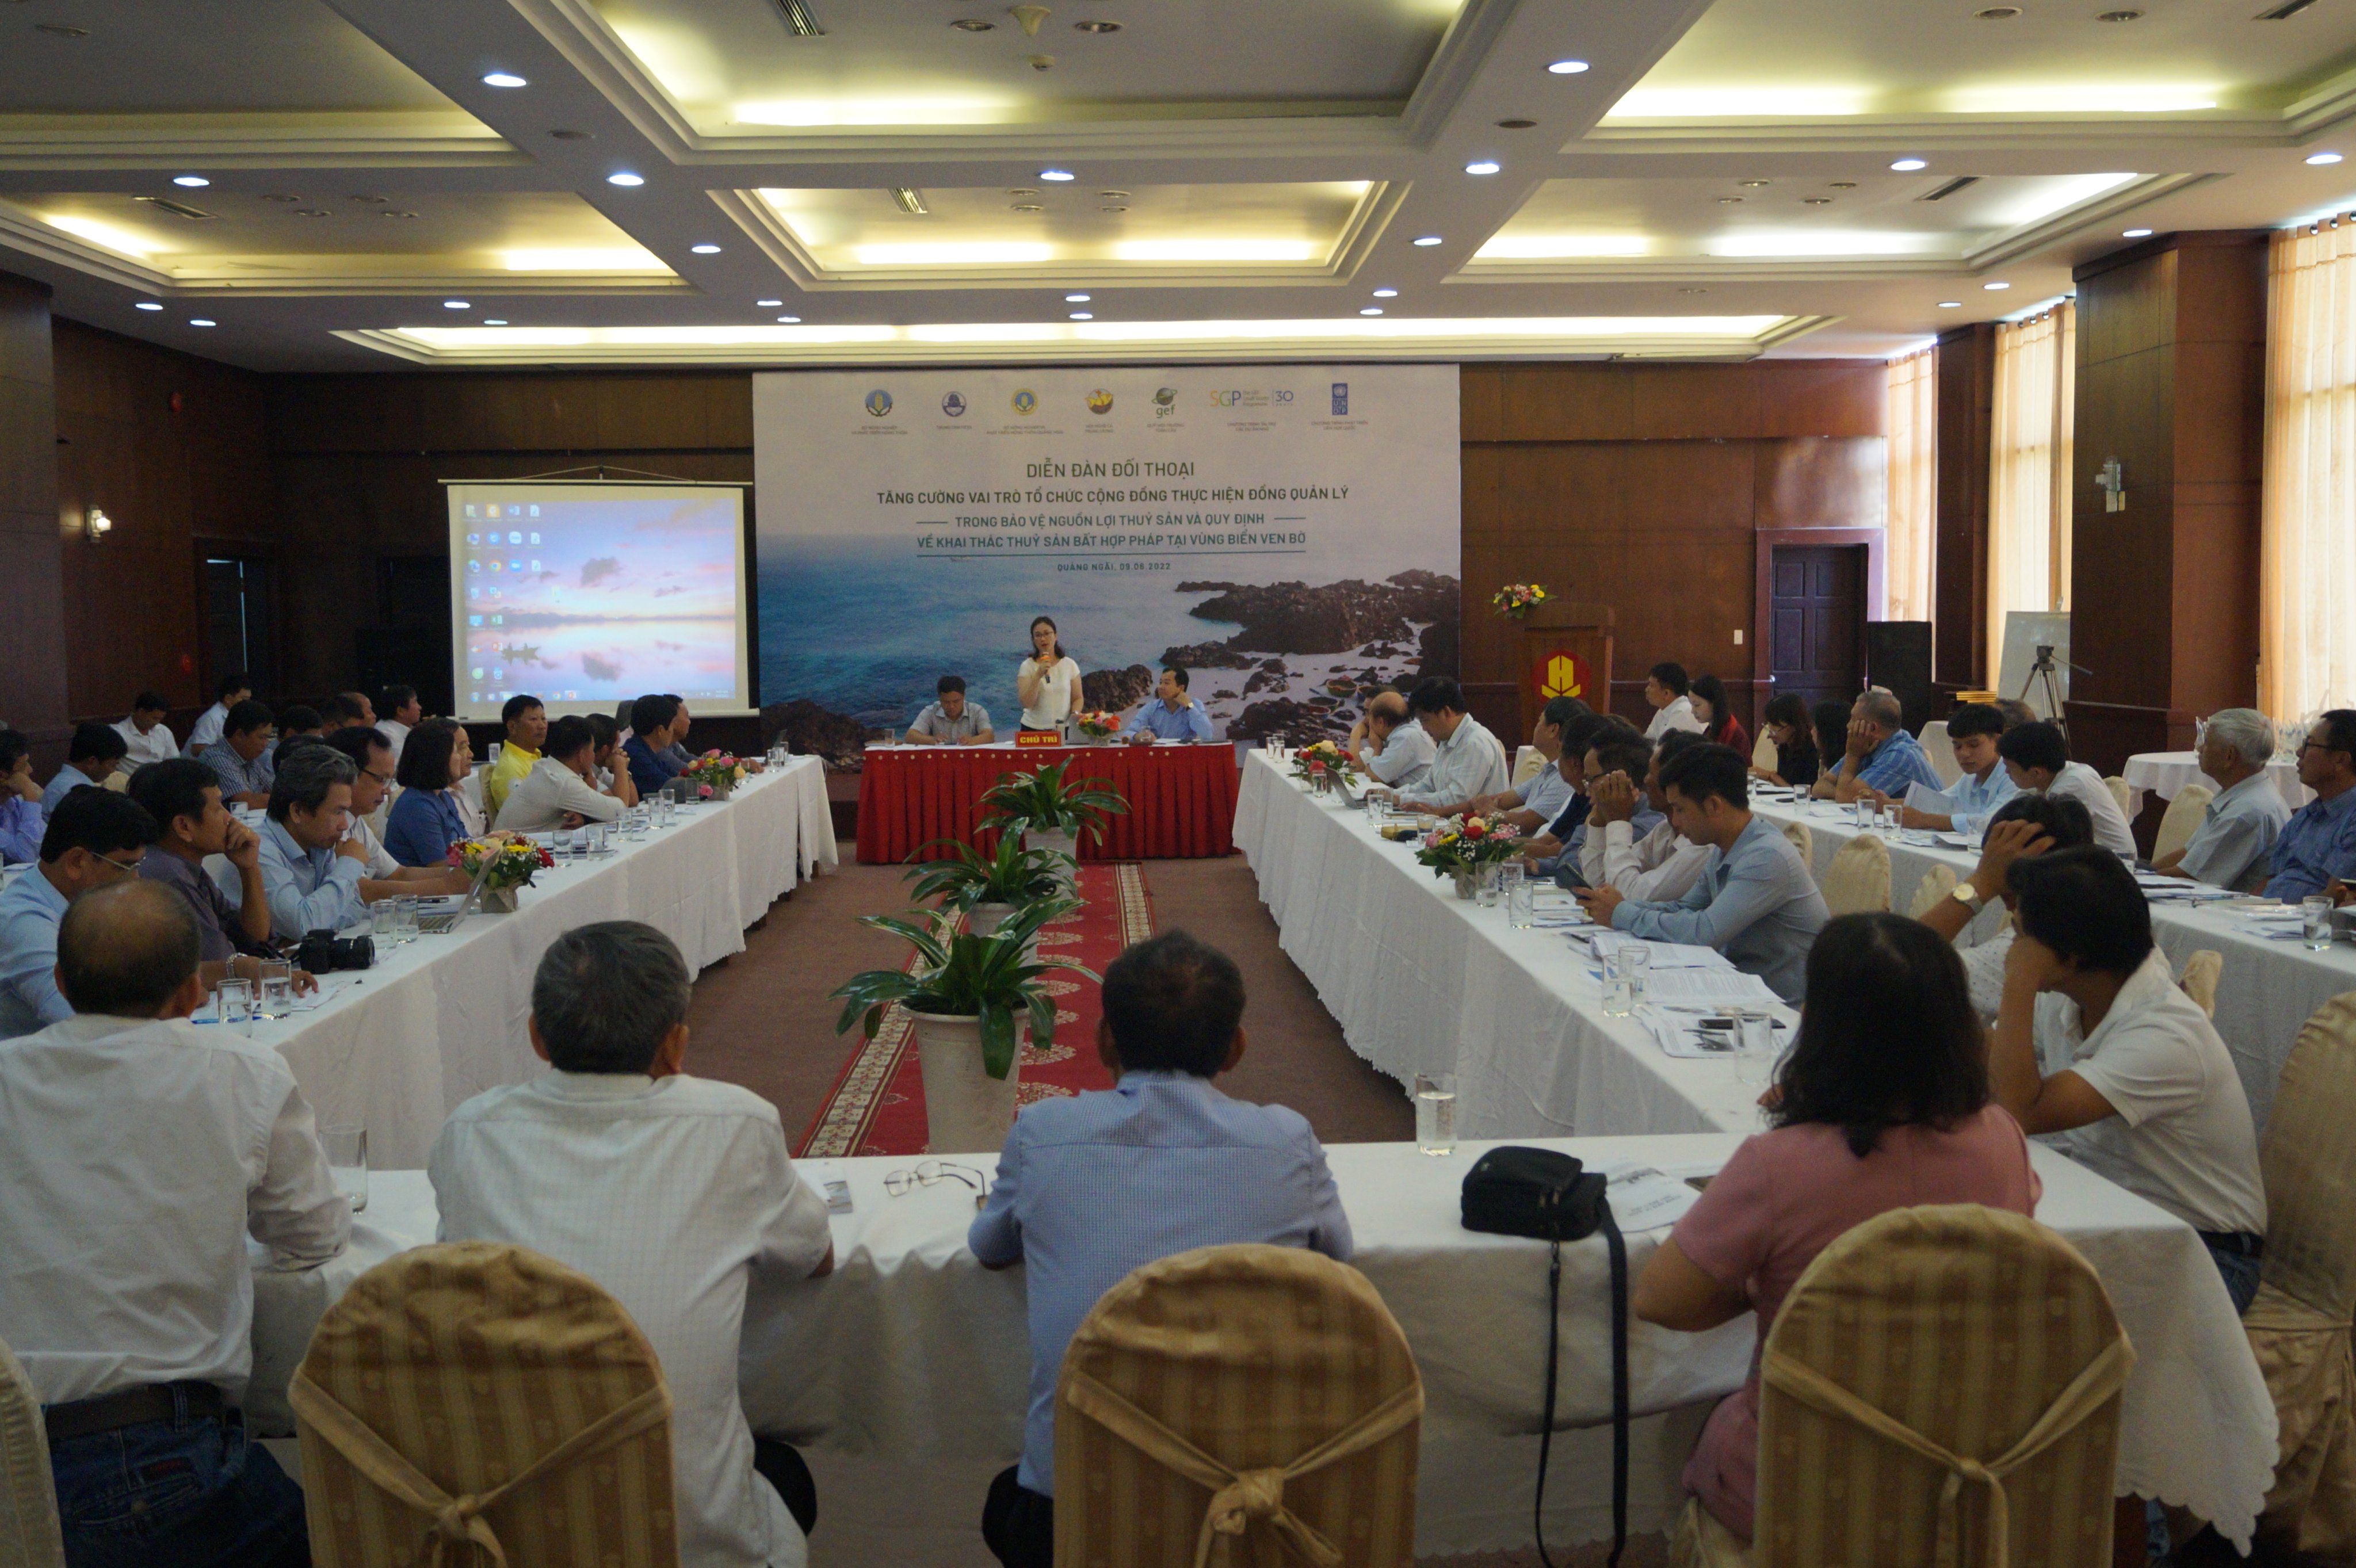 Diễn đàn đối thoại “Tăng cường vai trò tổ chức cộng đồng thực hiện đồng quản lý trong bảo vệ nguồn lợi thuỷ sản và quy định về khai thác thuỷ sản bất hợp pháp-IUU tại vùng biển ven bờ”.